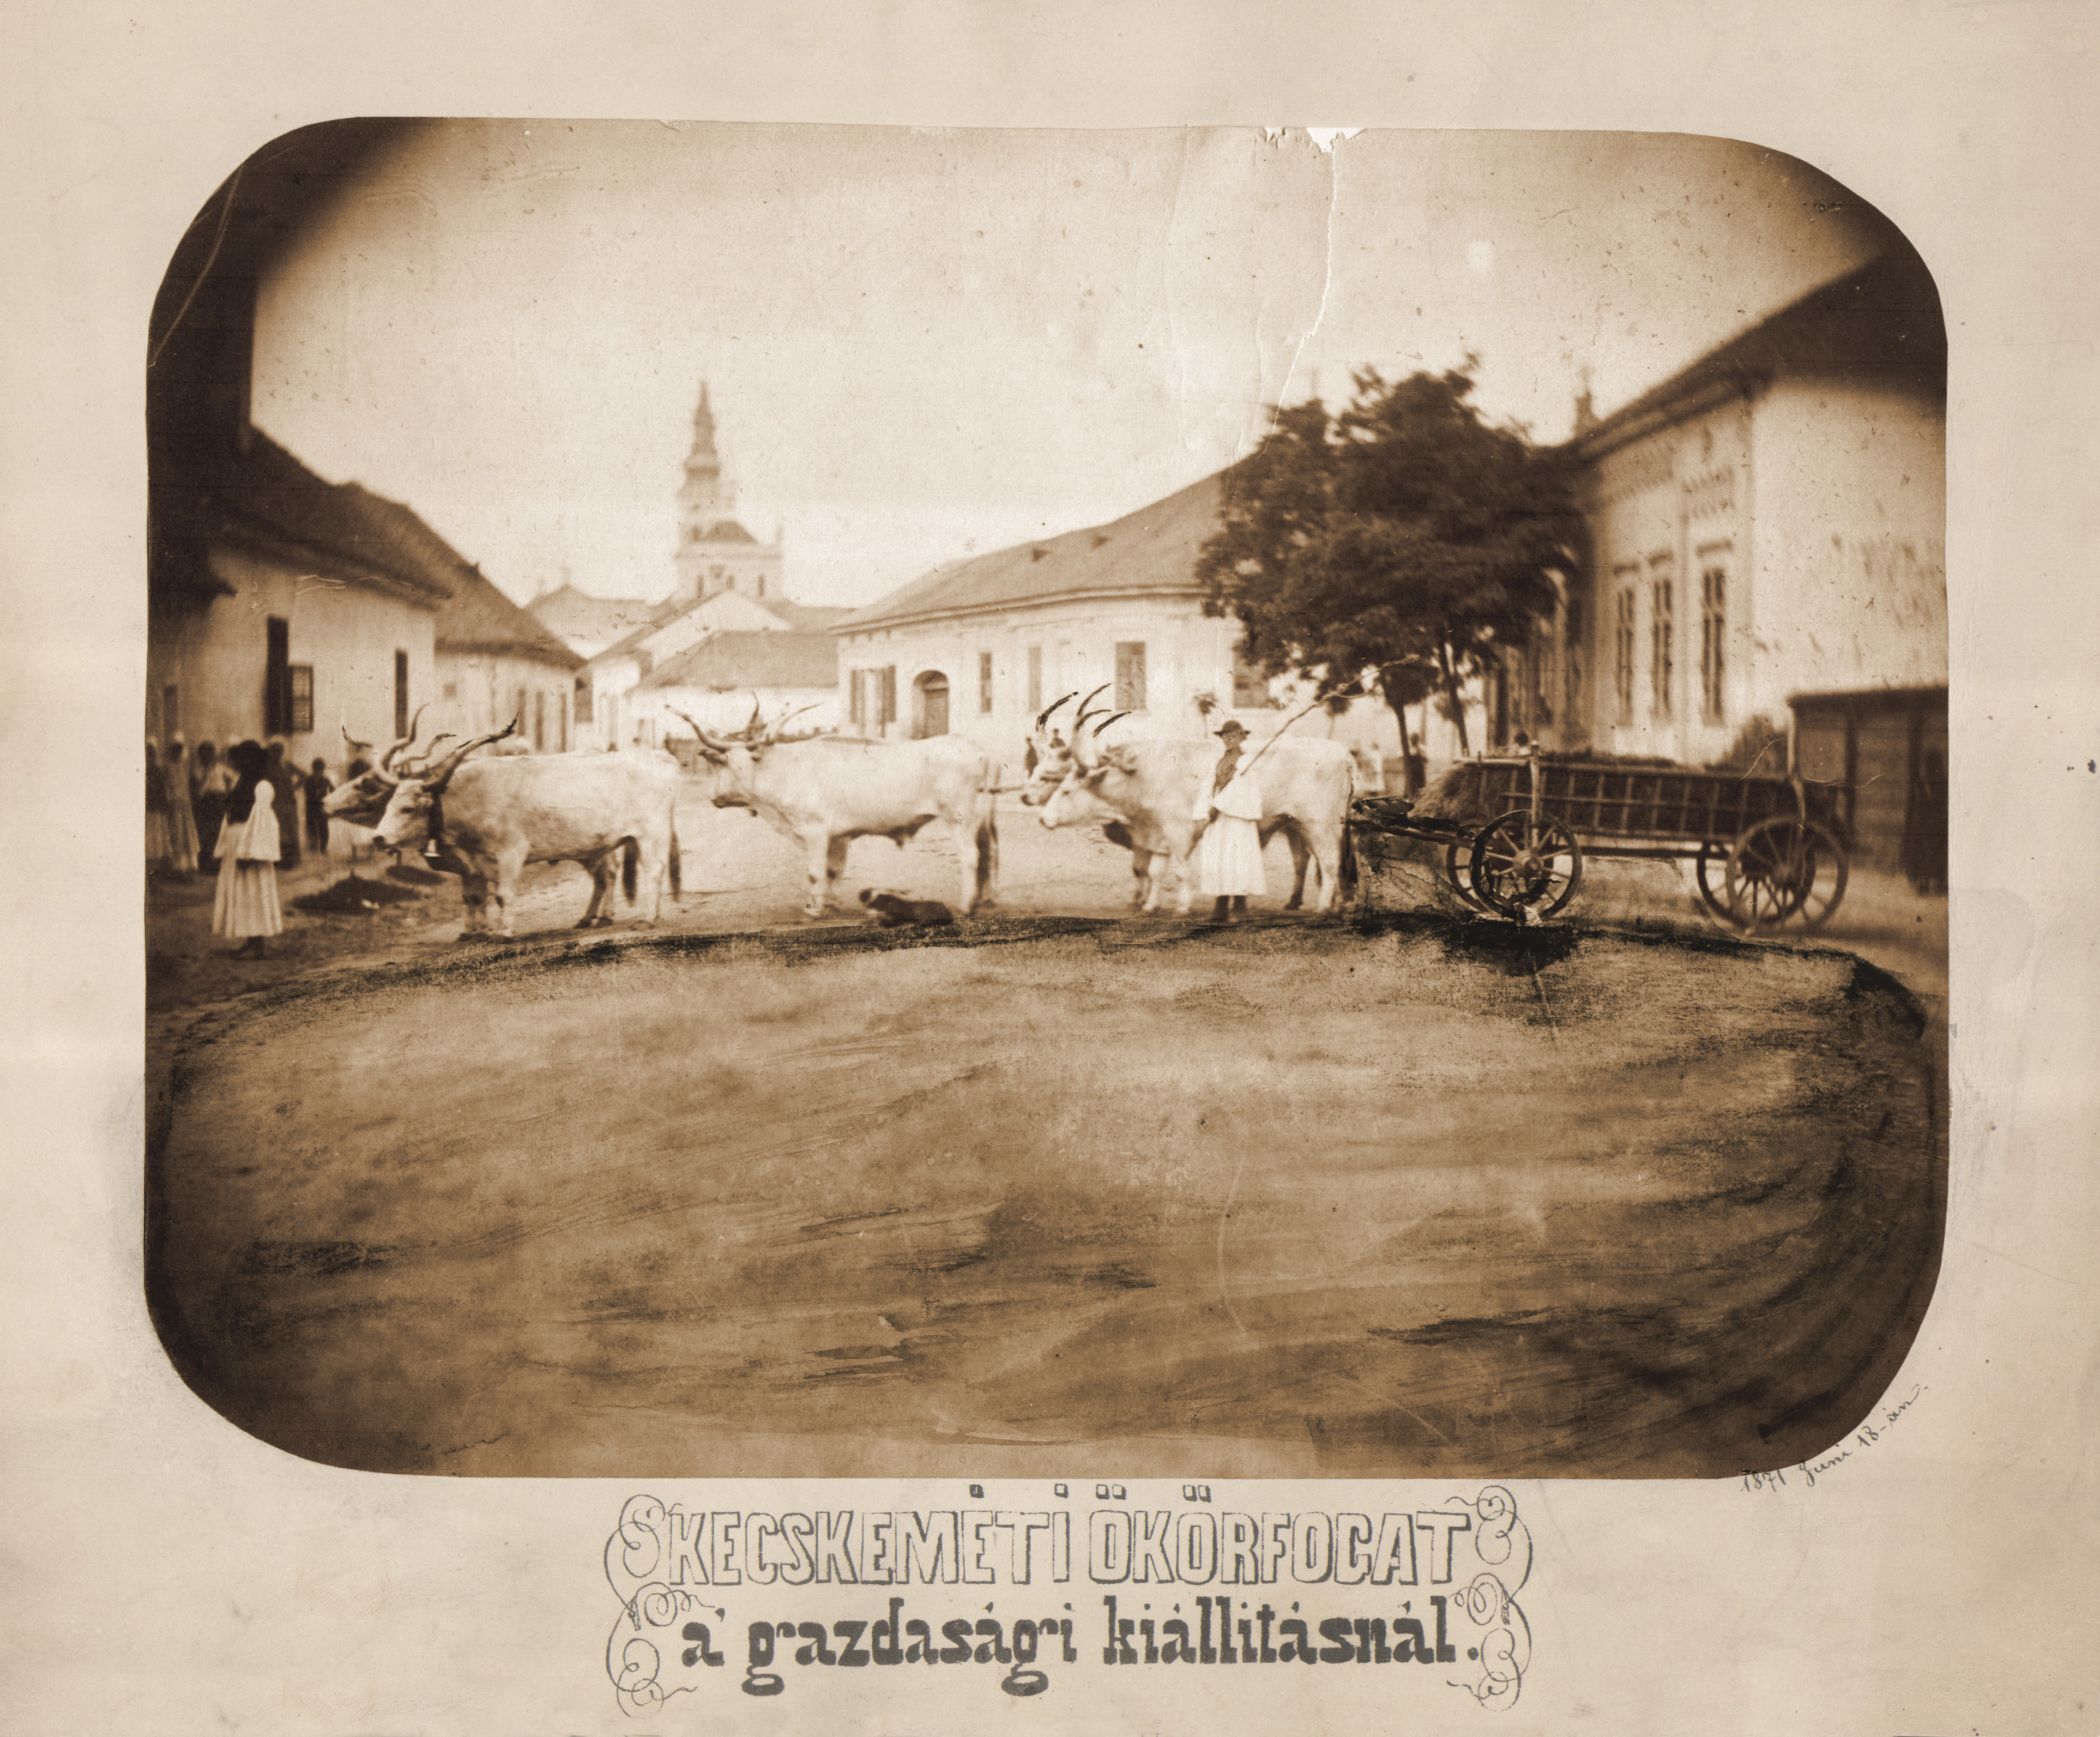 Kecskeméti utcakép ökörfogattal, fotó, 1871, MNL BKML XV. 5. a 